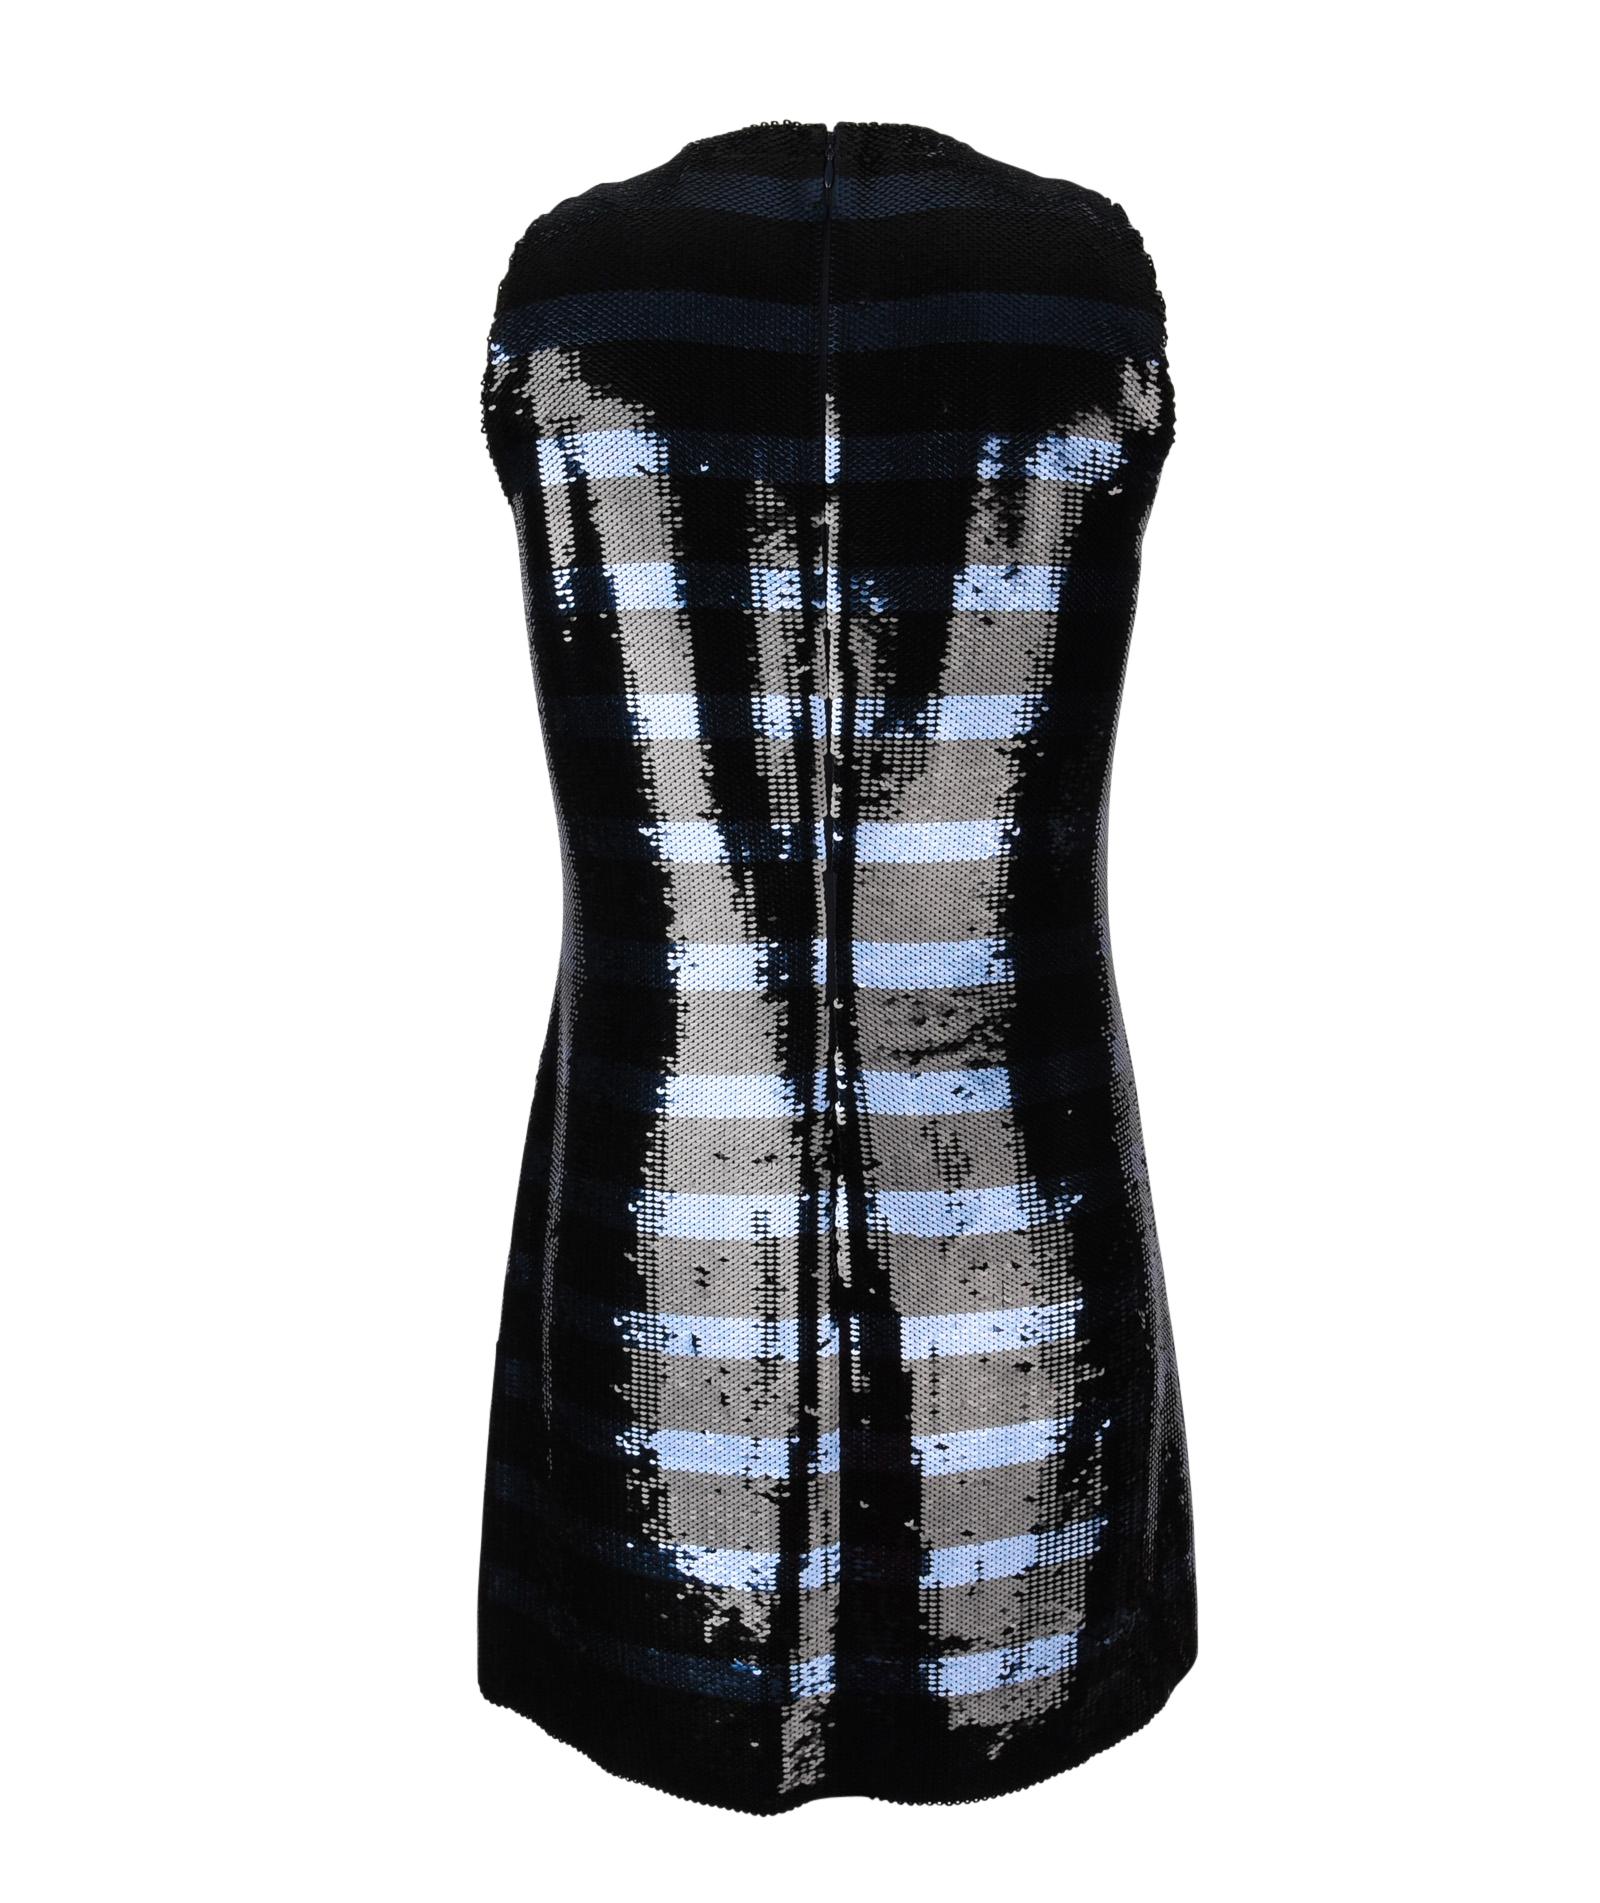 Christian Dior Dress Striped Sequin Embellished Navy / Black 6 7